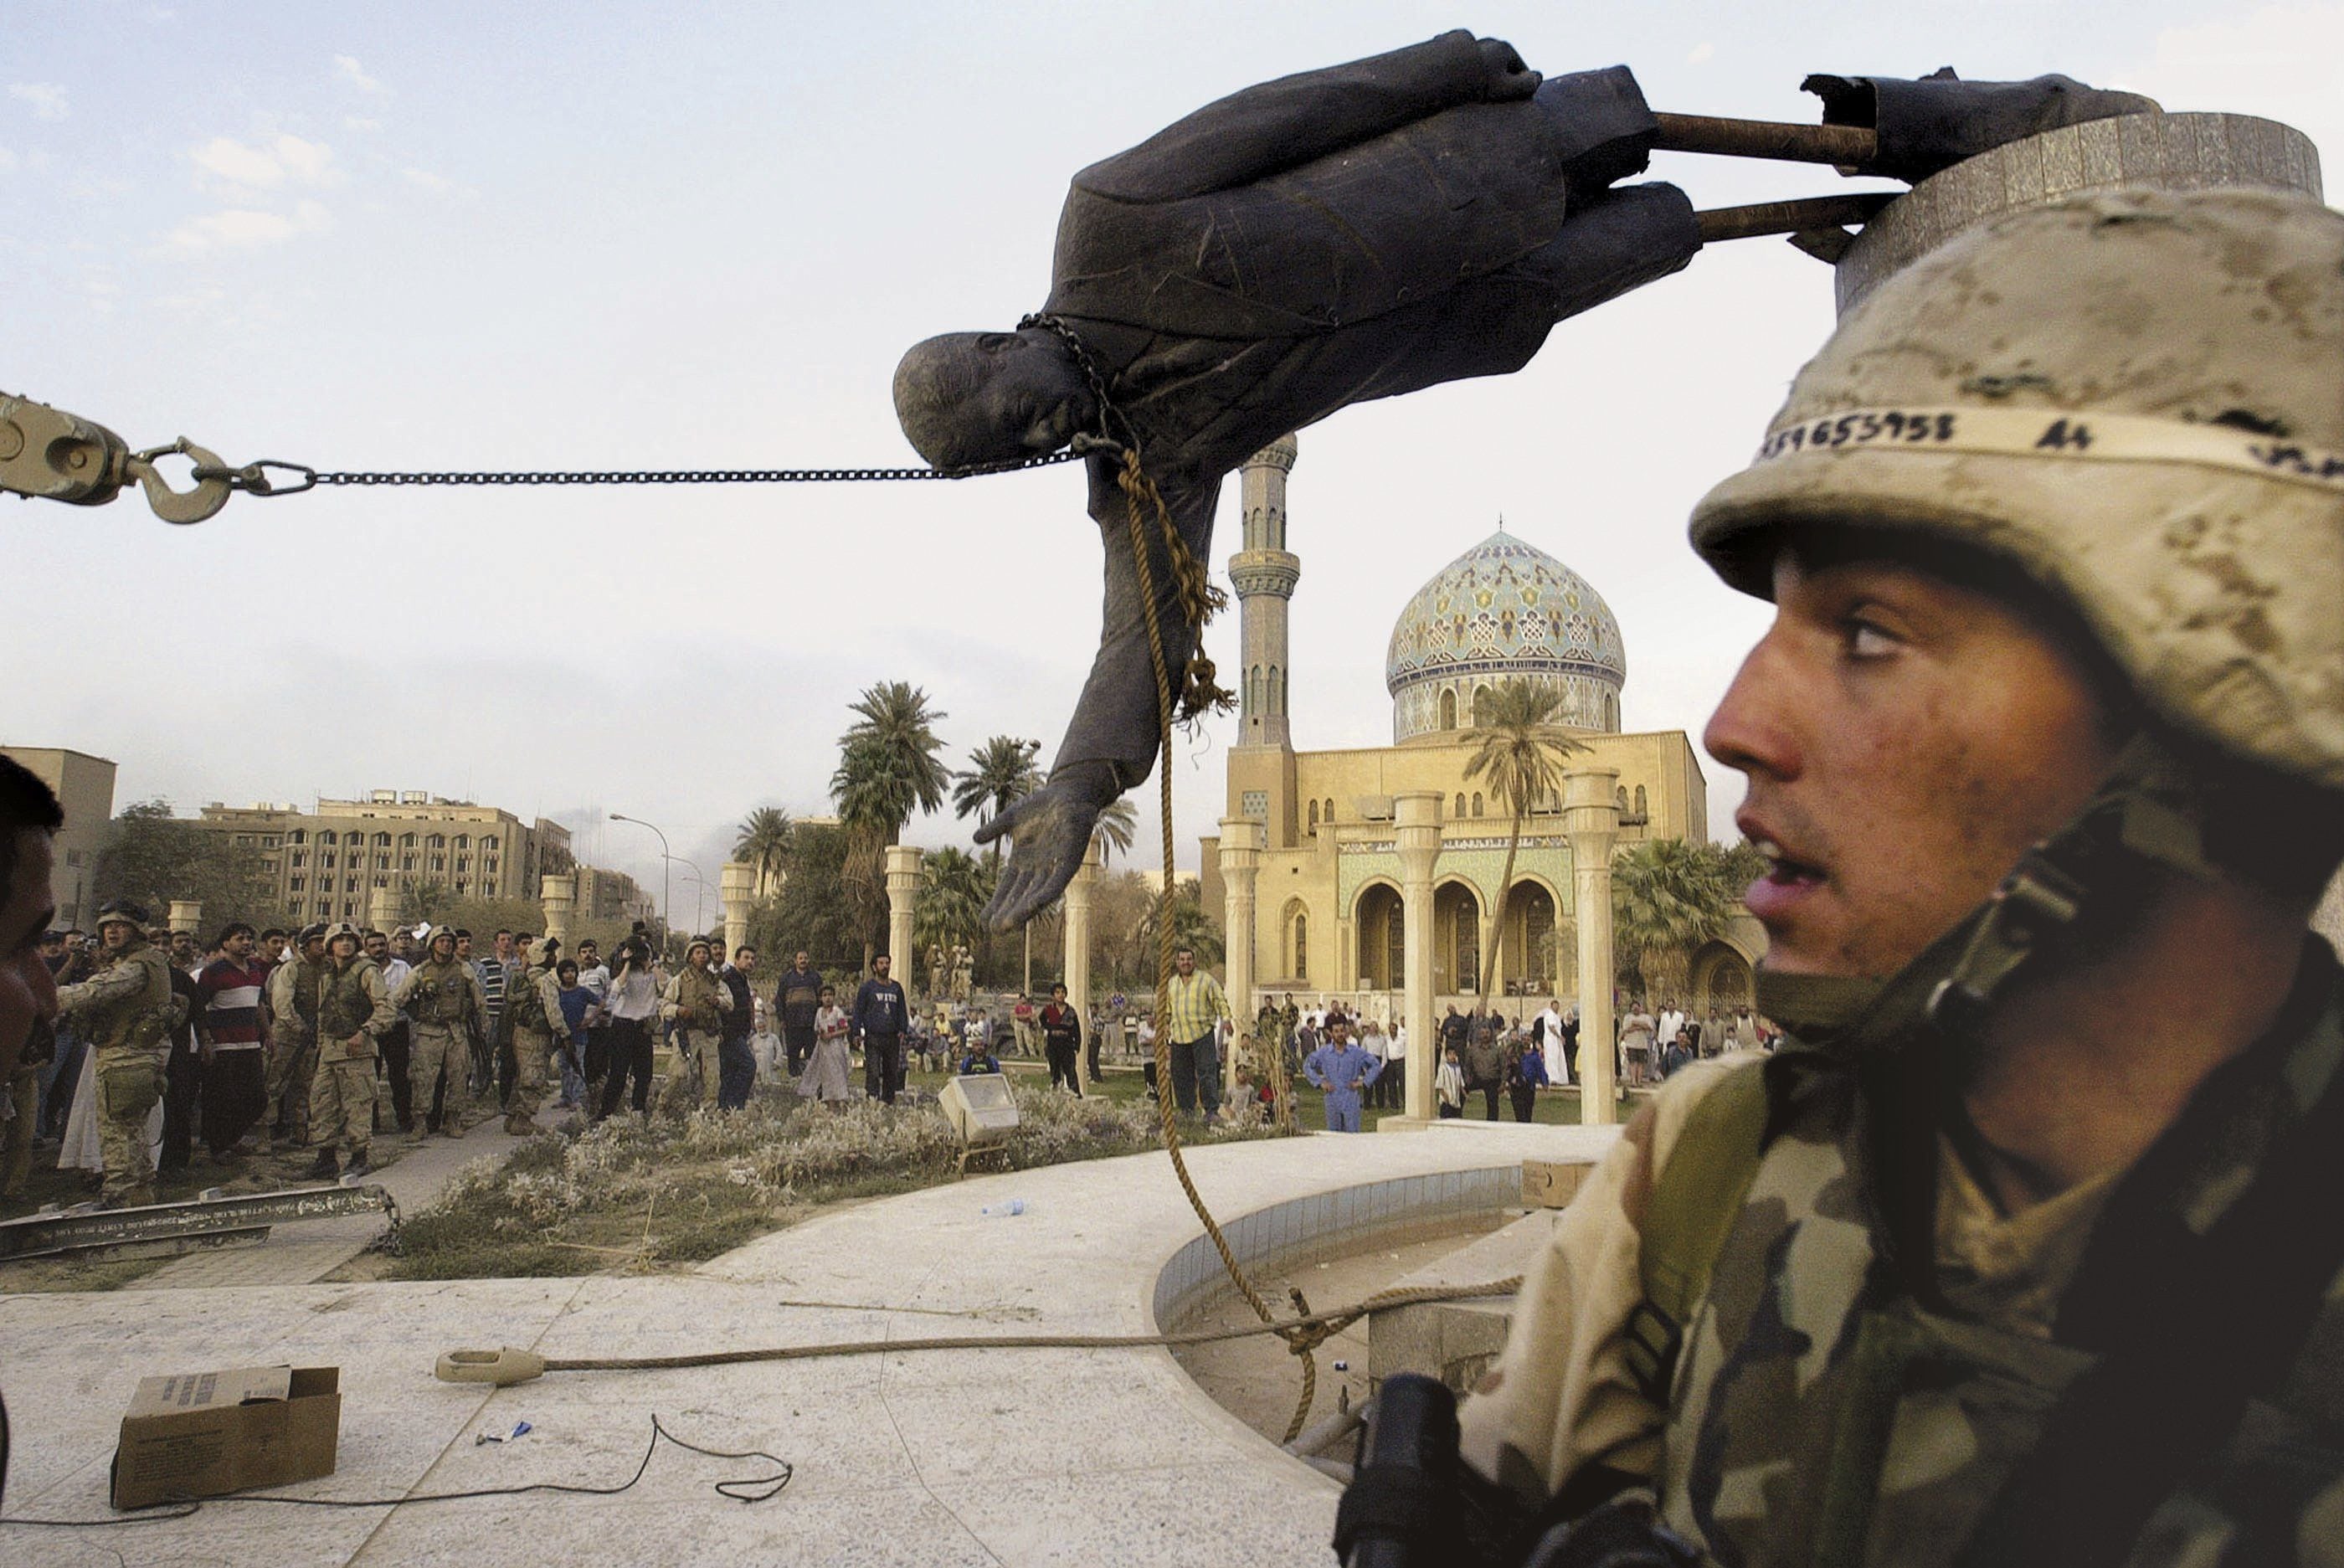 Caída de la estatua de Saddam. Irak 2003.